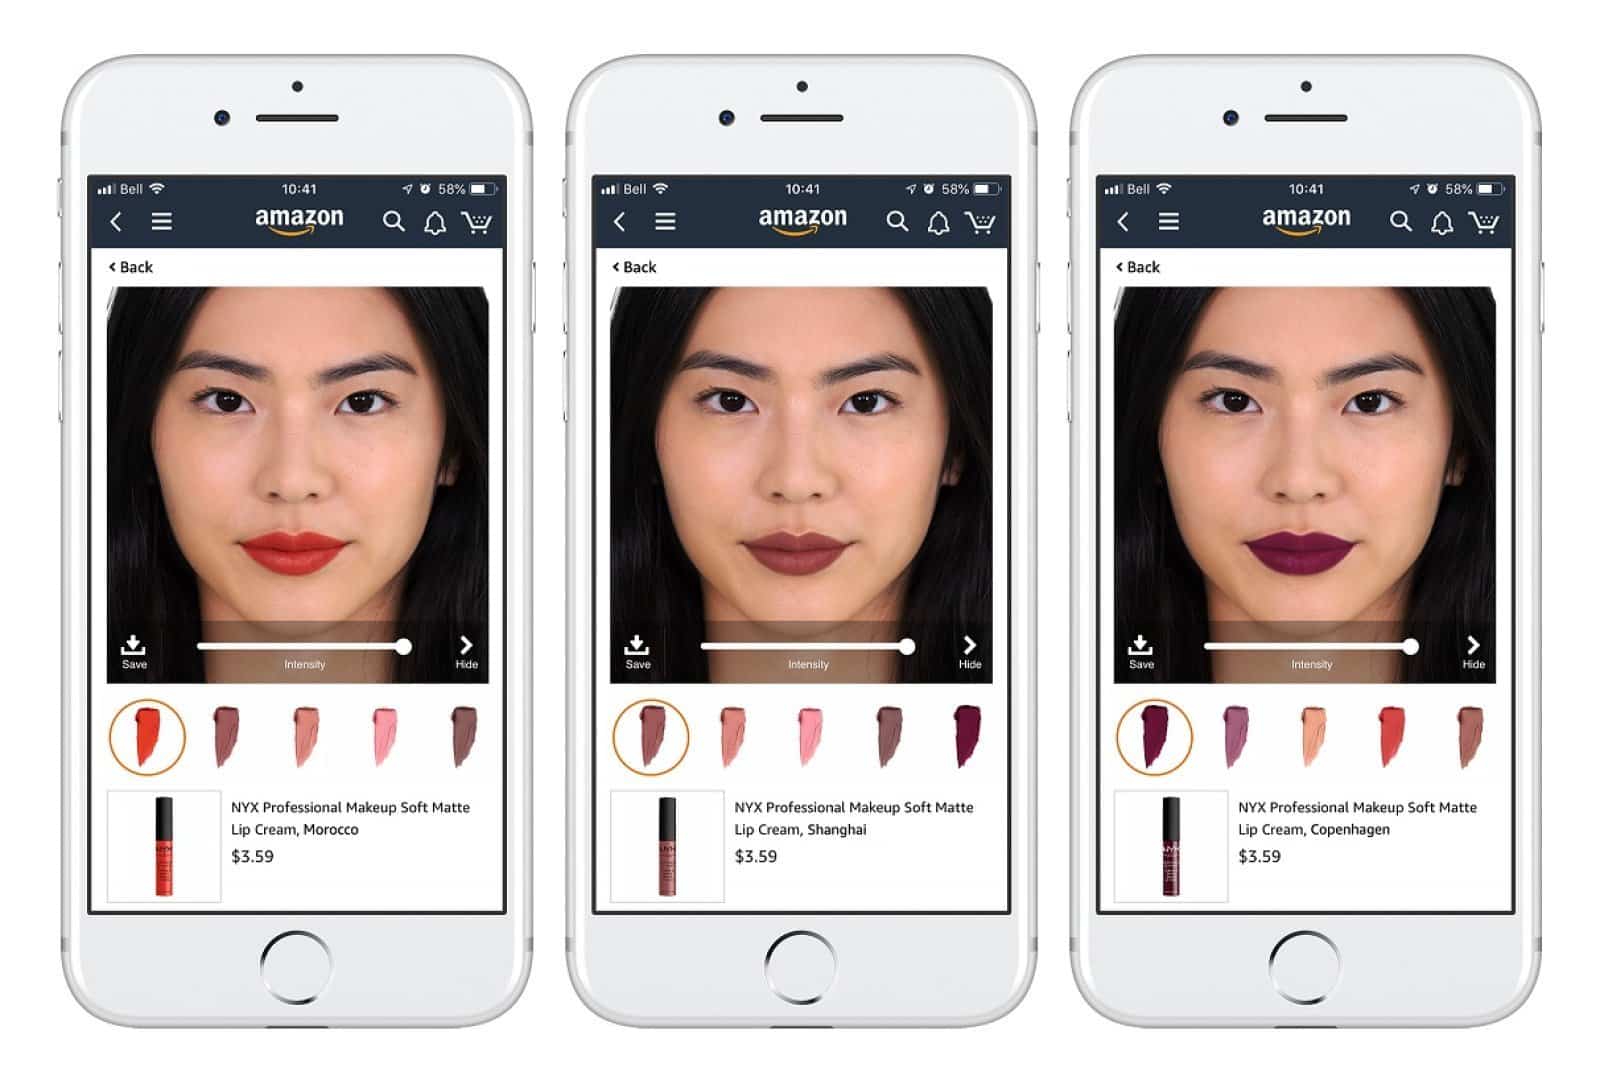 Aperçu de l'essai virtuel de maquillage via Amazon